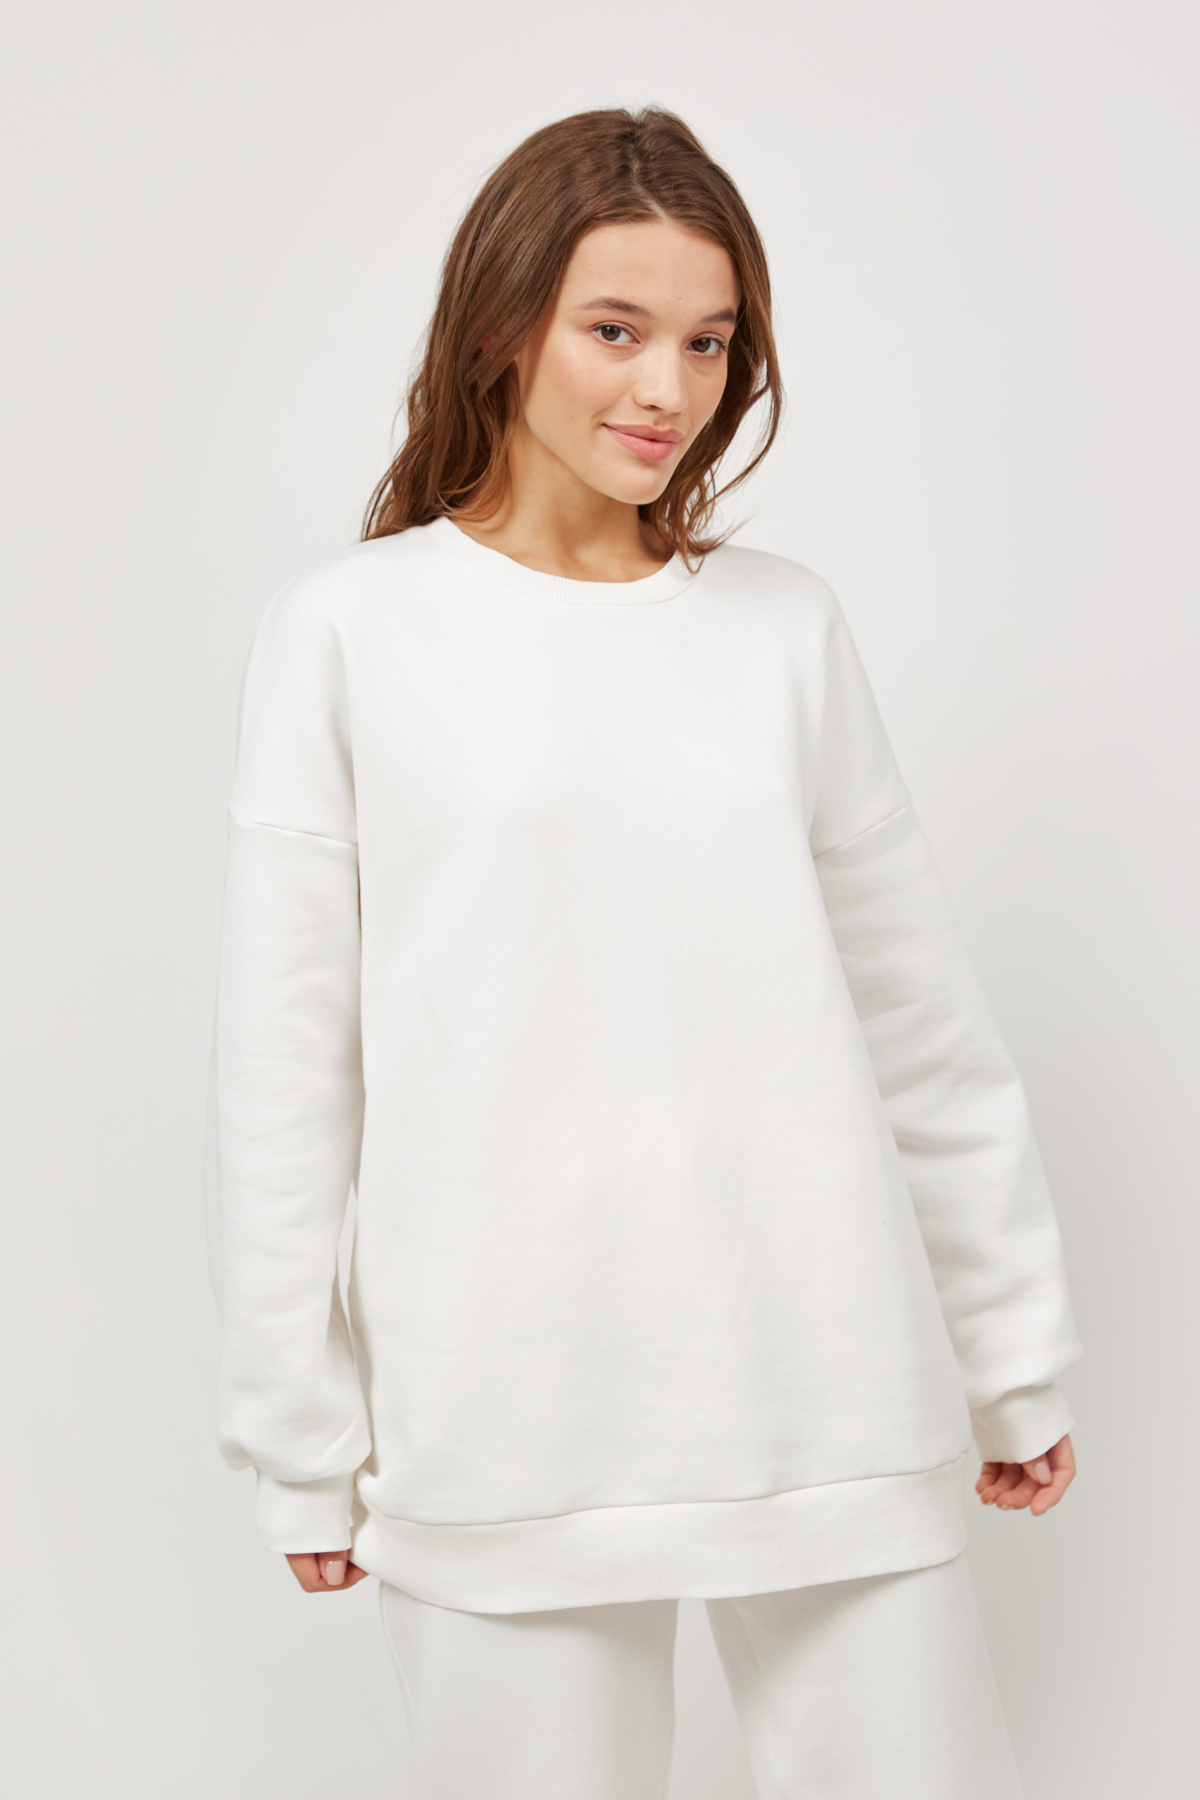 White jersey sweatshirt with fleece, photo 4